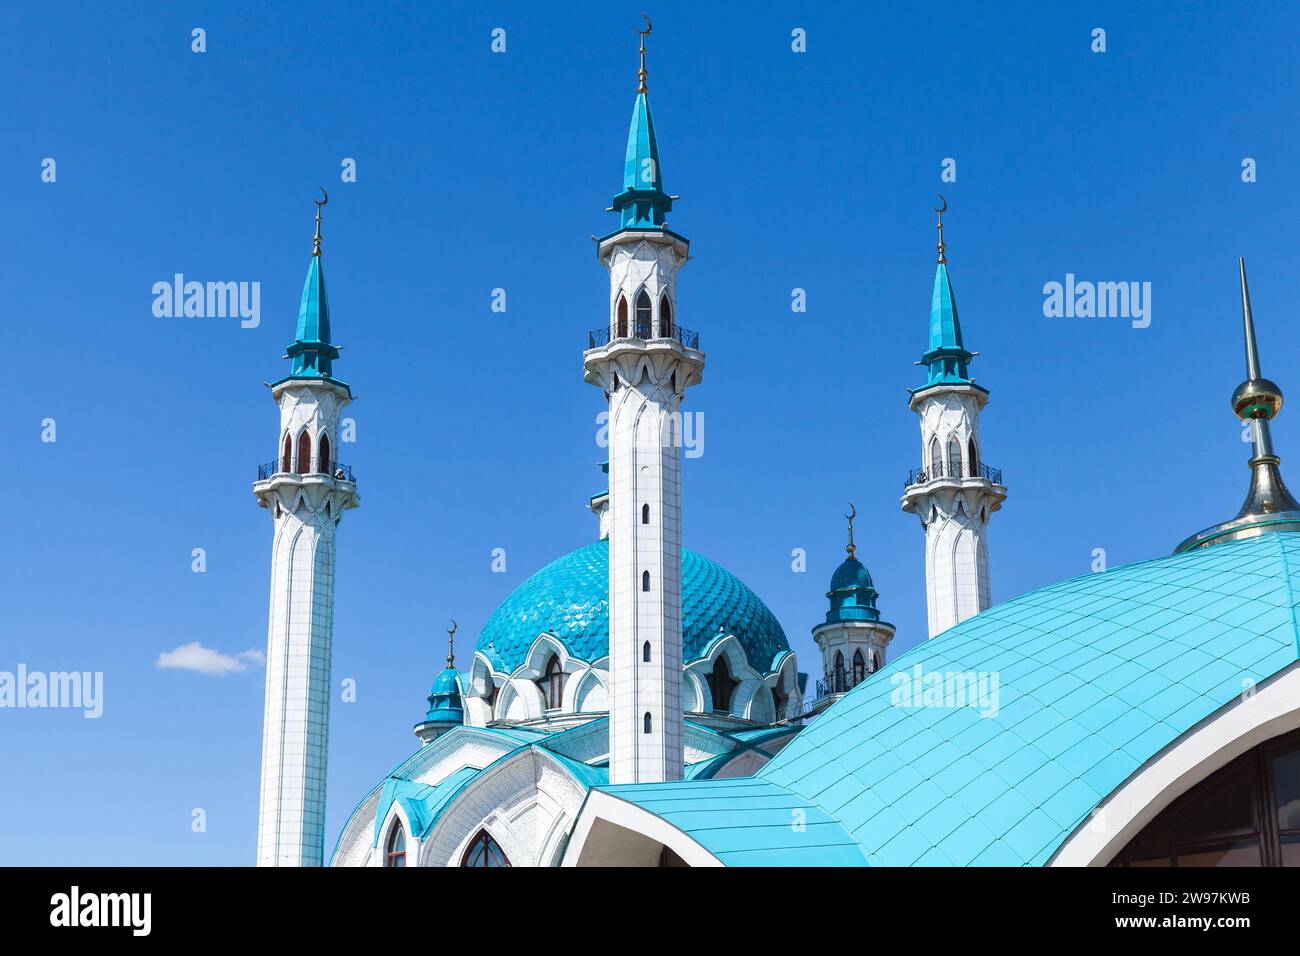 Toit et minarets de la mosquée Kul Sharif est sous le ciel bleu par une journée ensoleillée. Kazan Kremlin, République du Tatarstan, Russie Banque D'Images